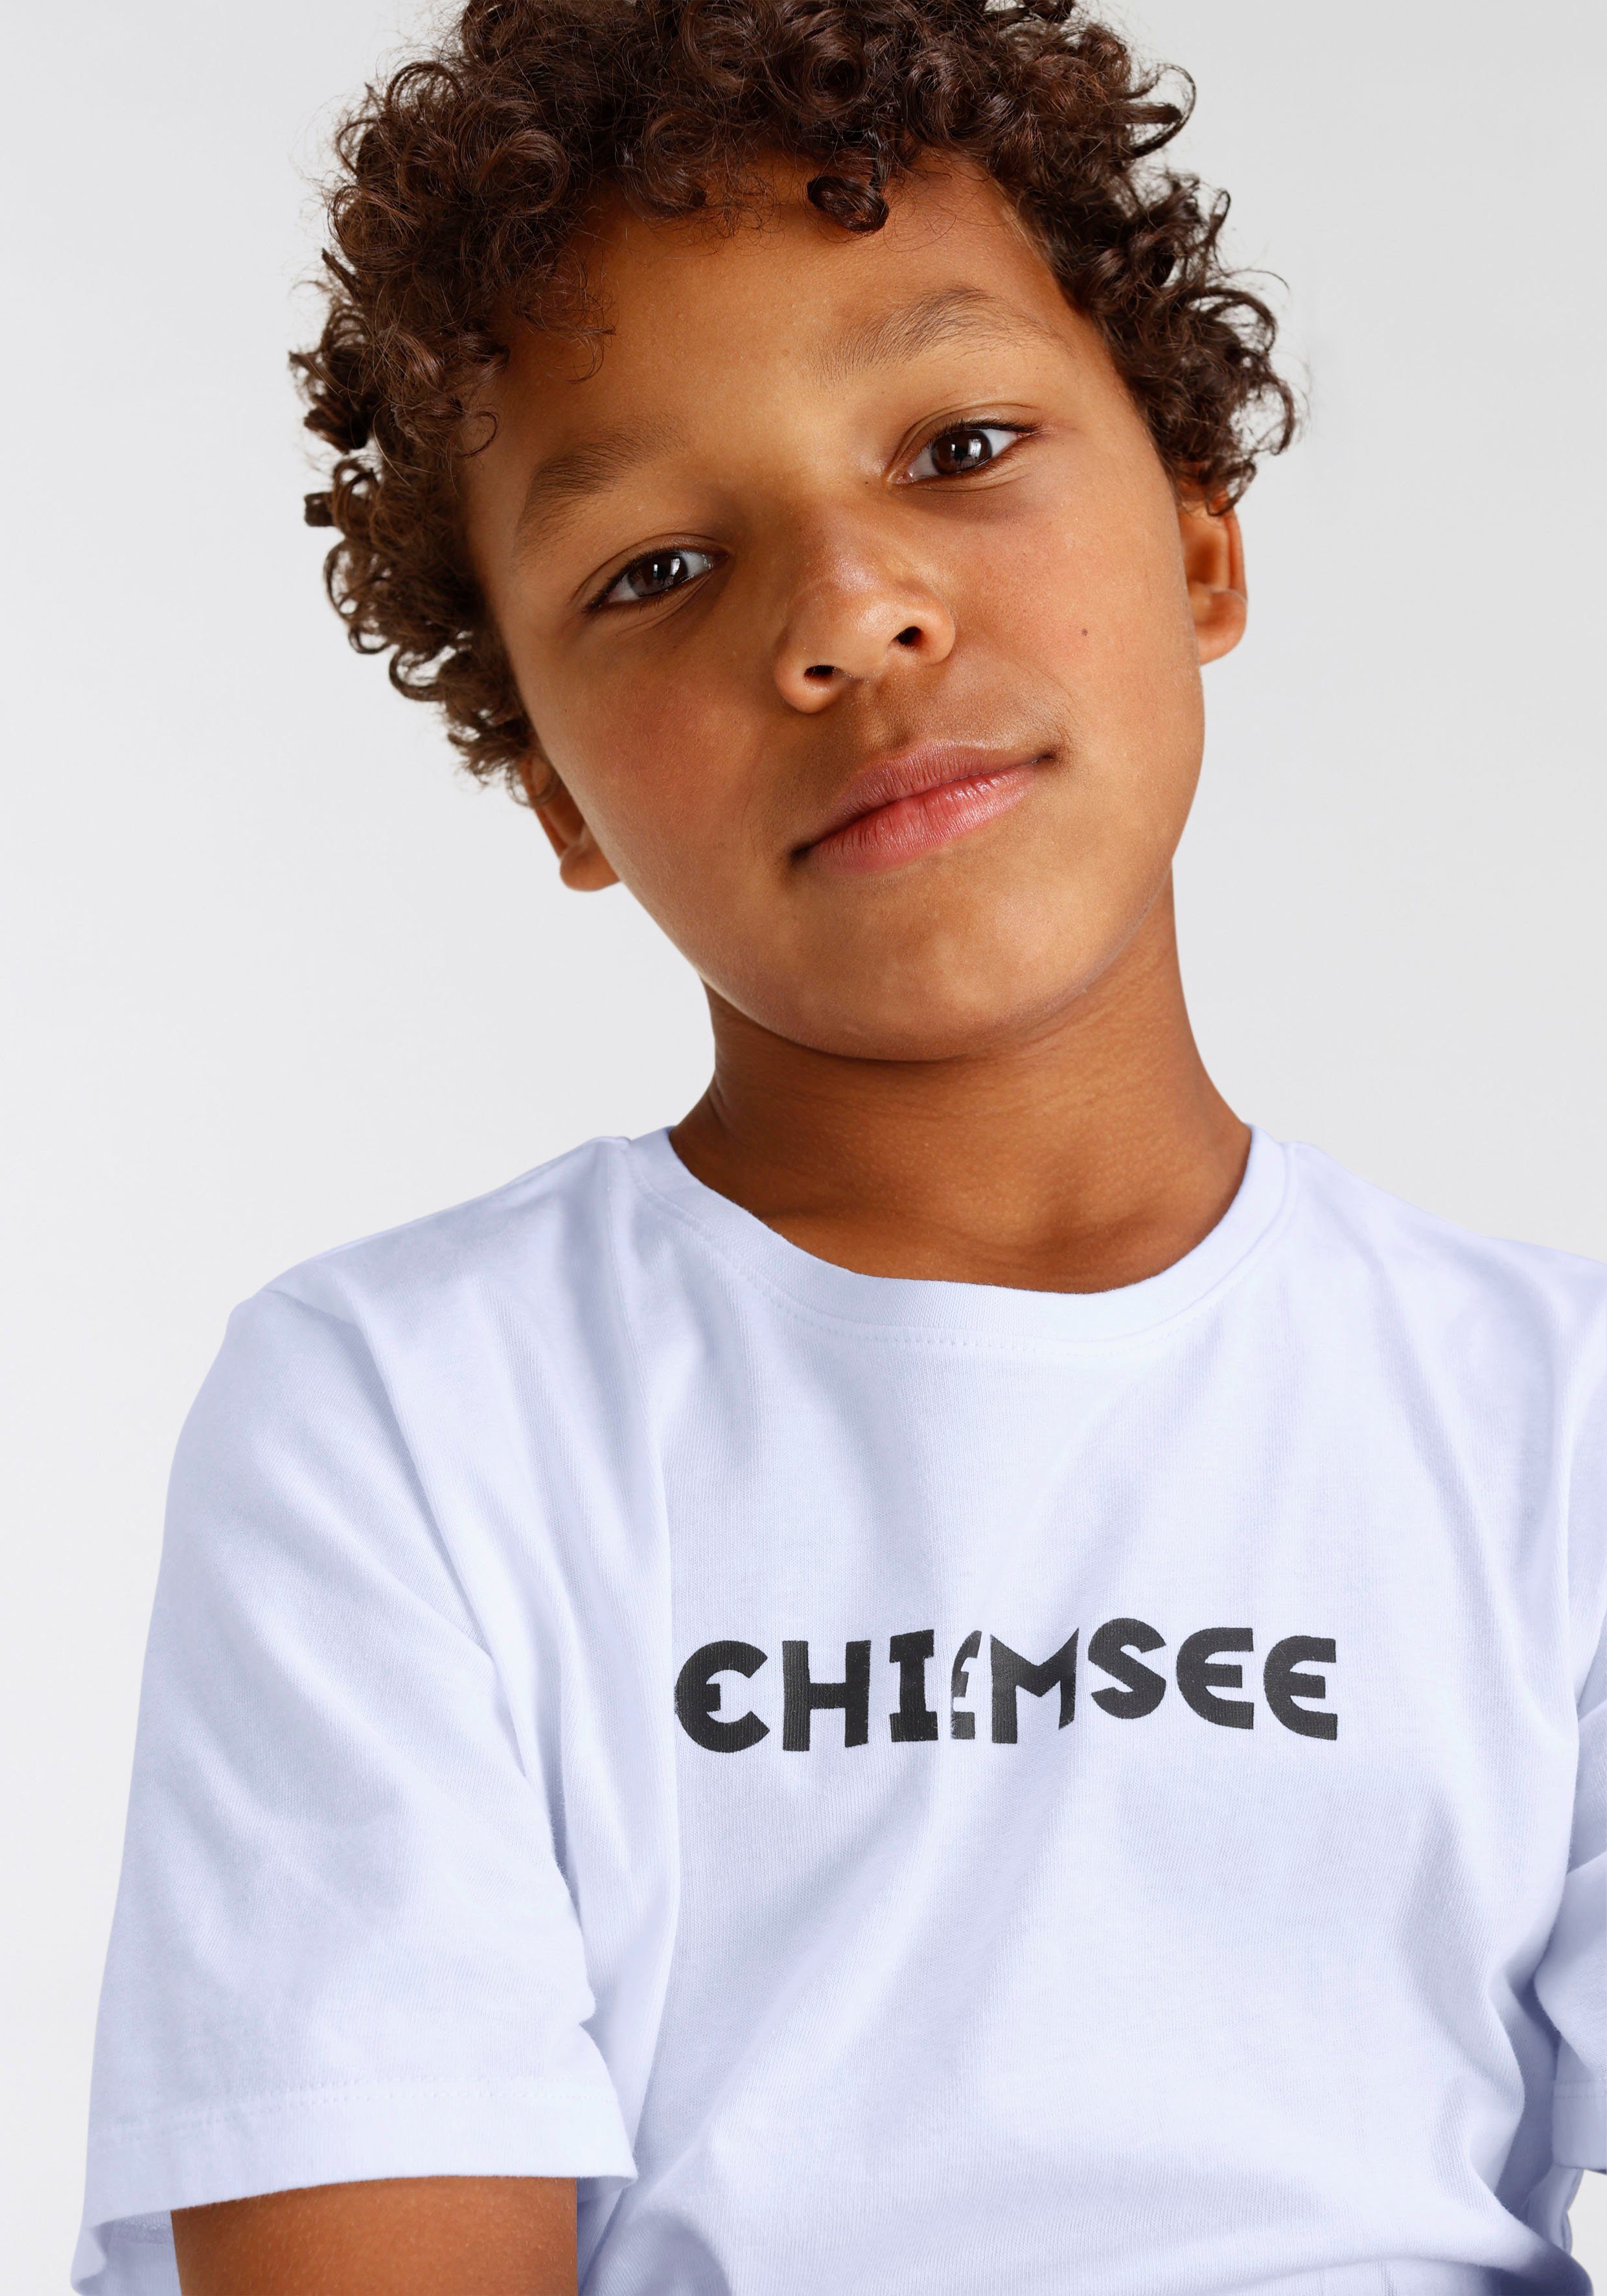 T-Shirt Chiemsee Modischer Farbverlauf